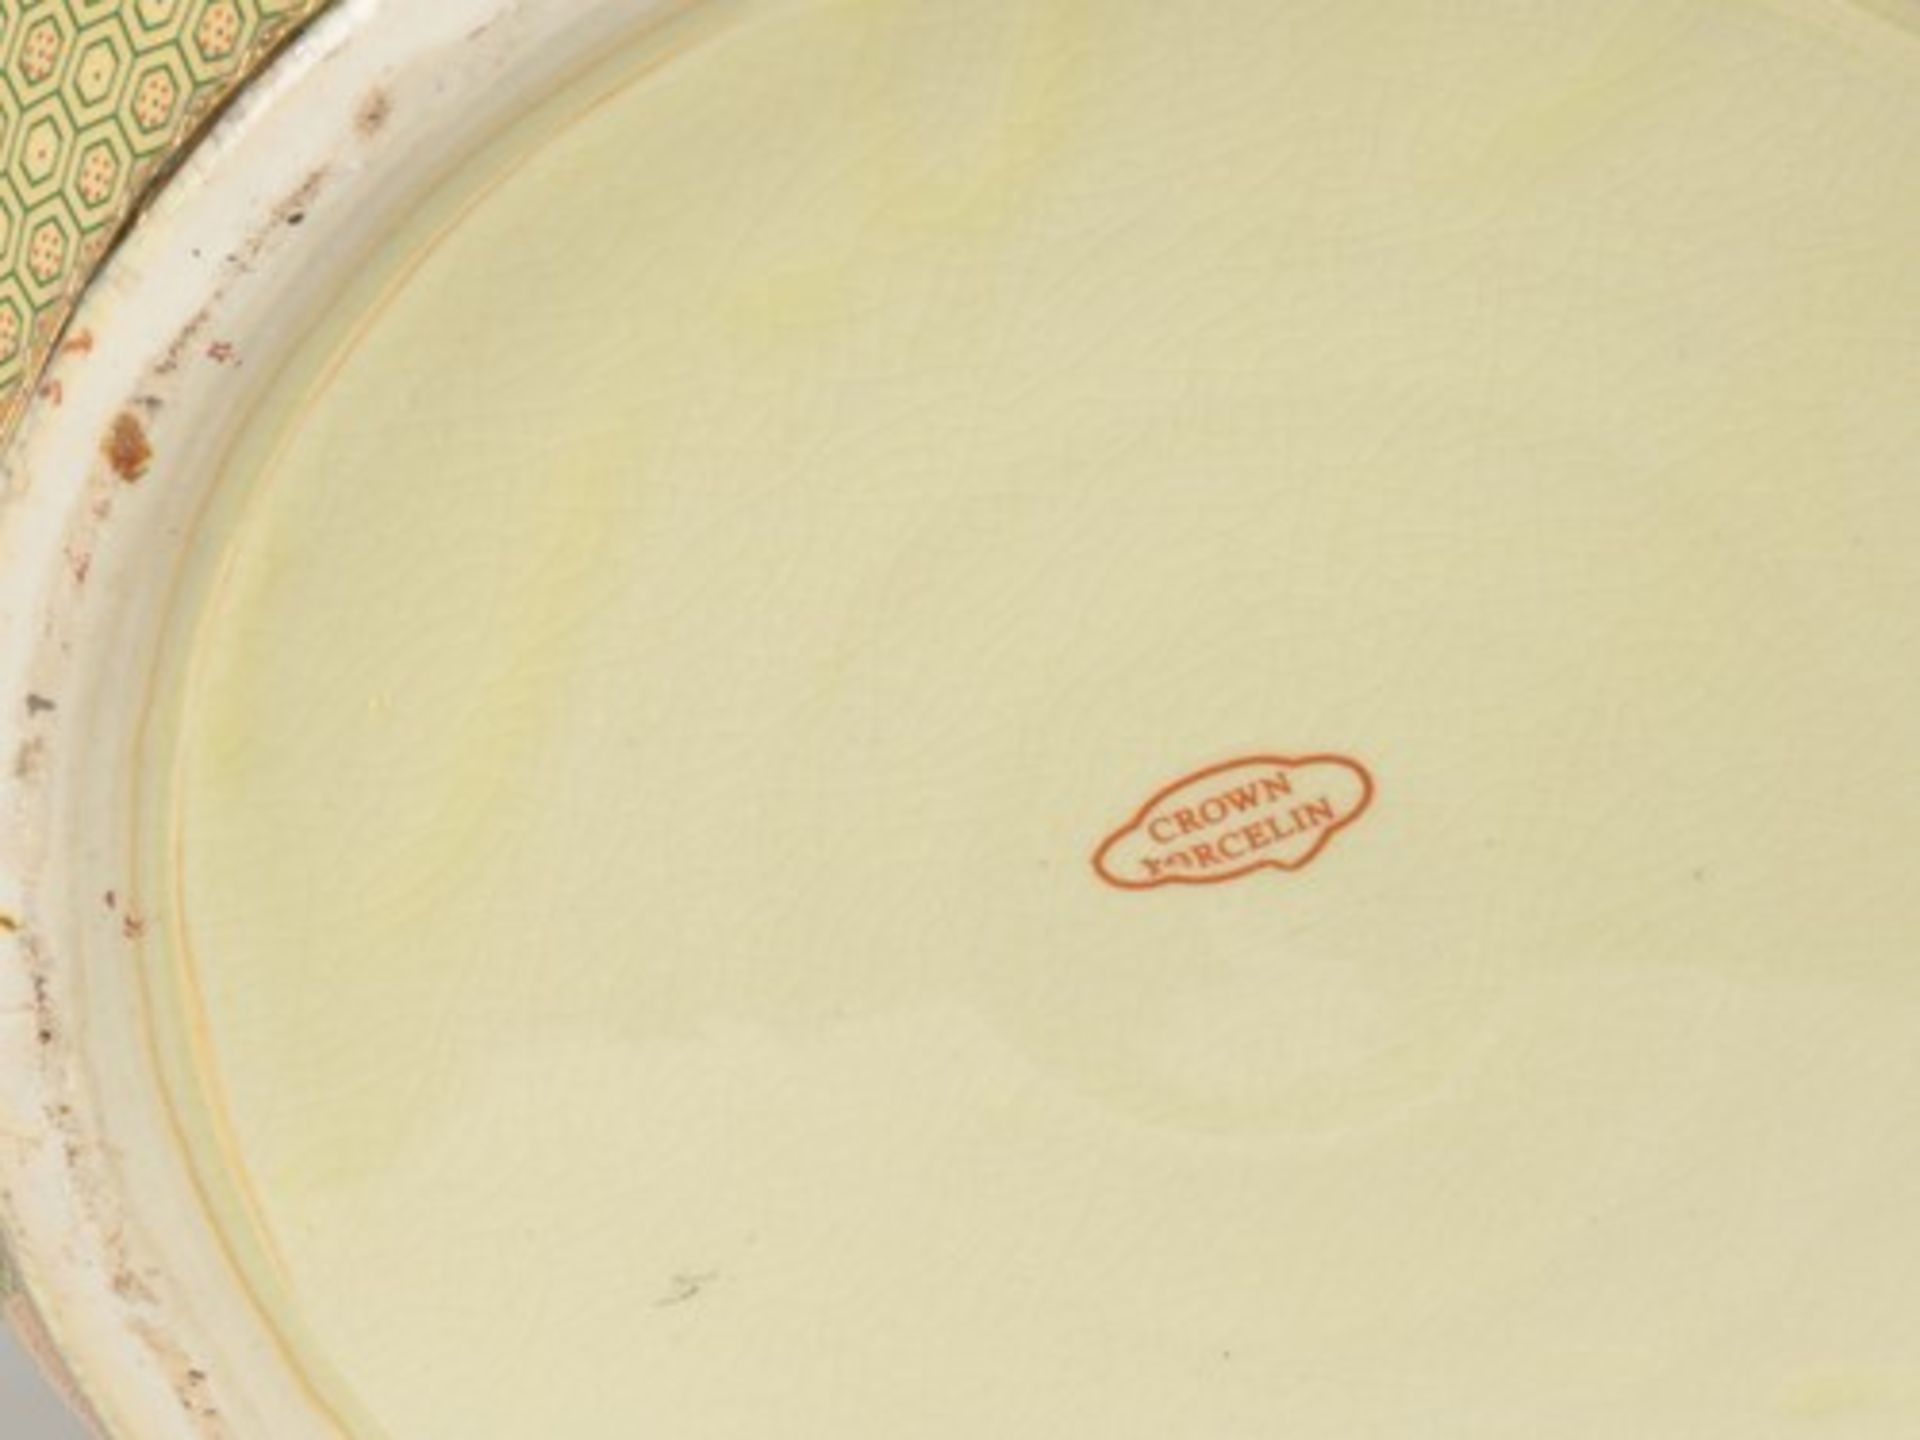 Fischbowlrote Marke, crown porcelin, heller Scherben, gebauchte Form, umlaufend polychromer - Bild 7 aus 7